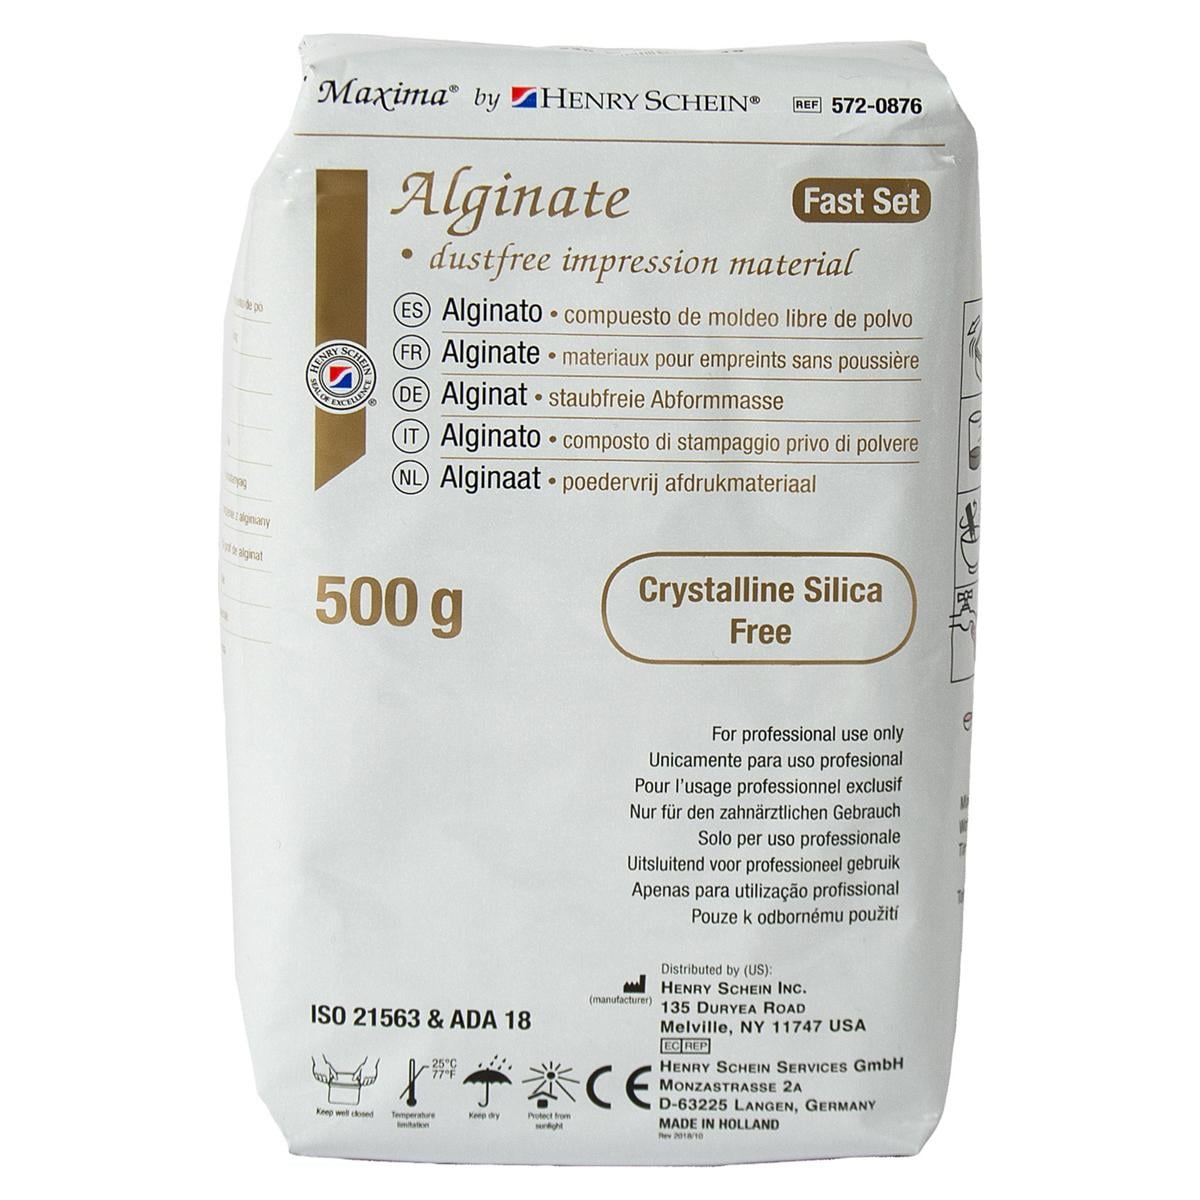 HS-Maxima® Alginat Quick, Alginate Plus - Beutel 500 g